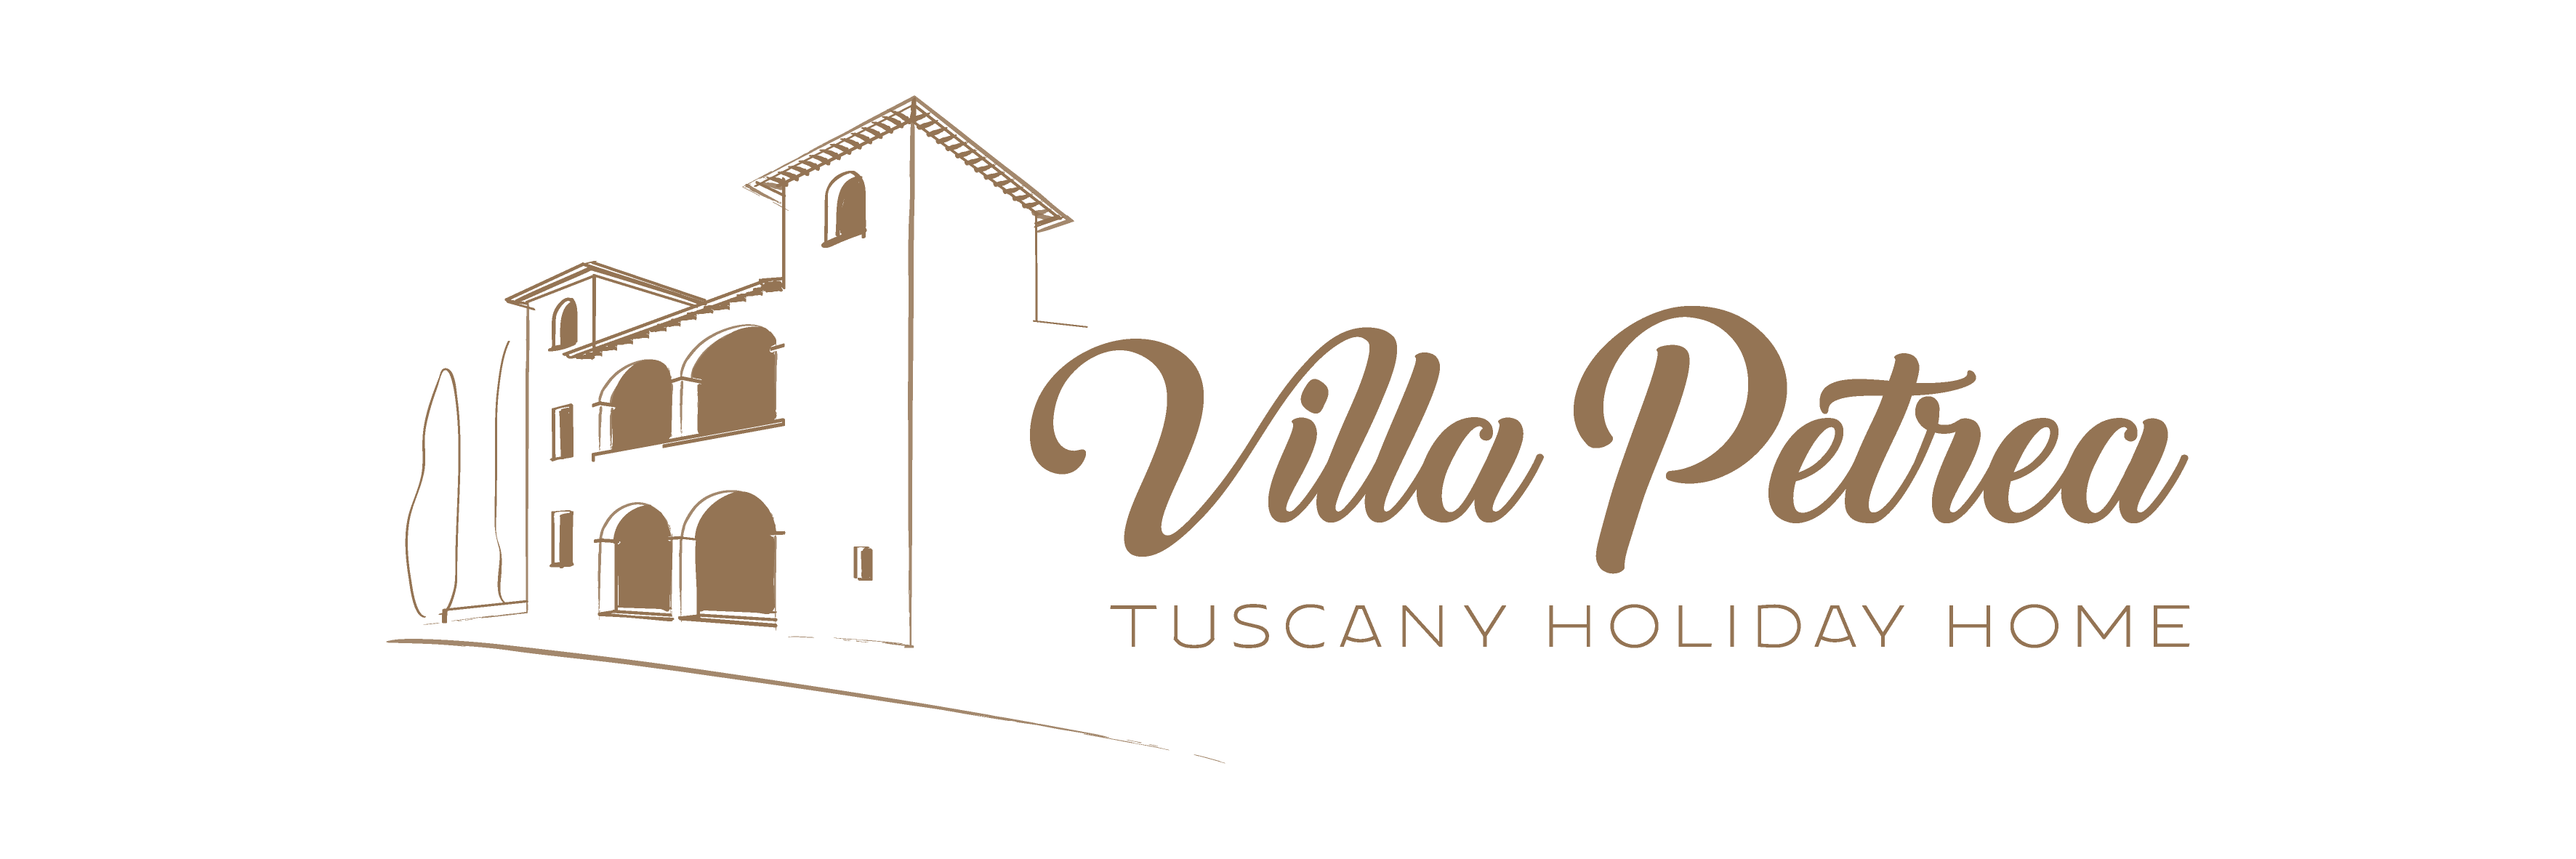 Villa Petrea